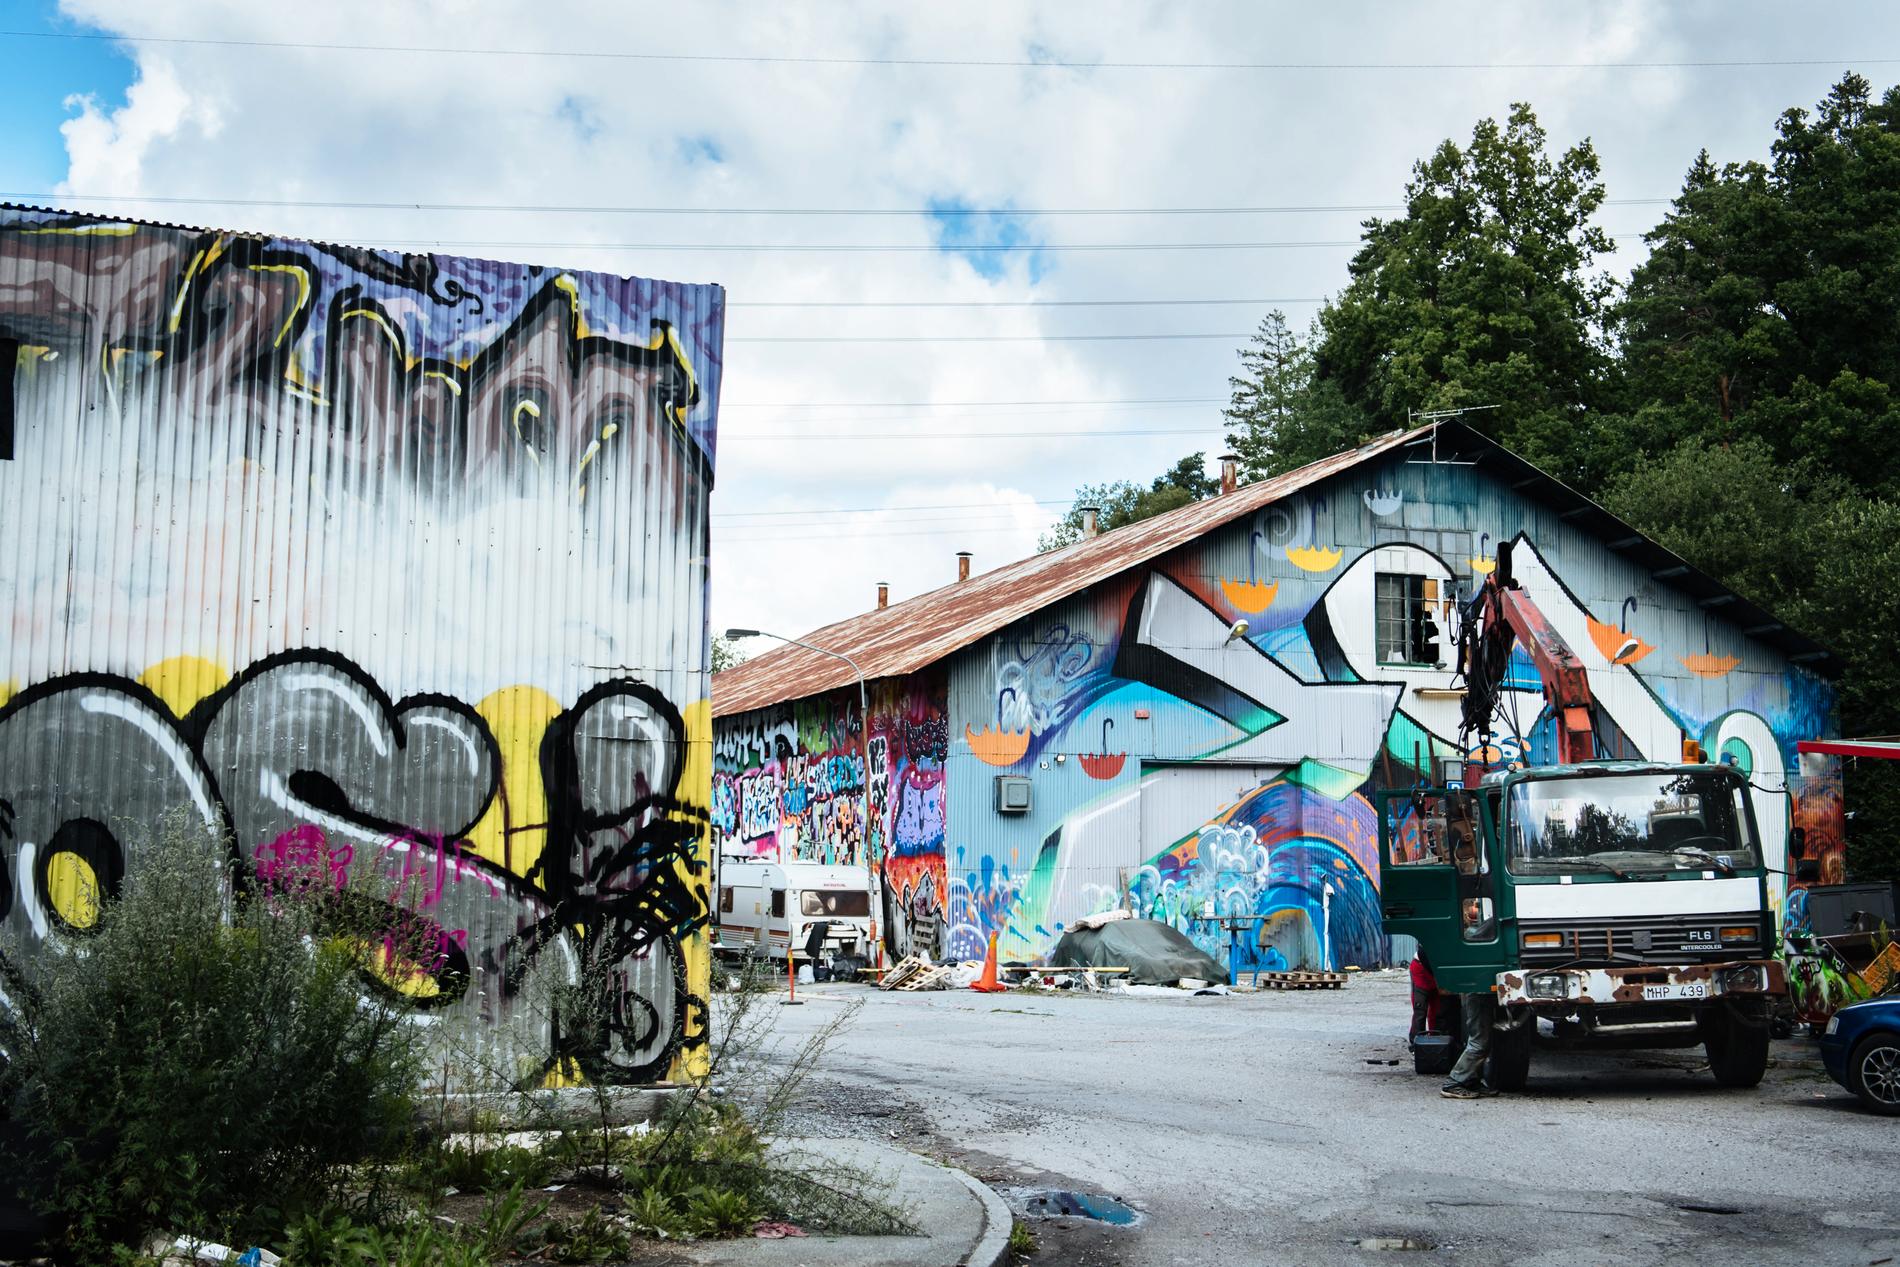 Sedan nolltoleransen försvann har Stockholms stad byggt lagliga graffitiväggar på flera håll i staden, men Mikael Rickman tycker inte att de kan ersätta Snösätra. "Här finns 9 000 kvadratmeter med ytor att måla på. Här finns en möjlighet för graffitin att utvecklas. Snösätra är en mötesplats som behövs", säger han.